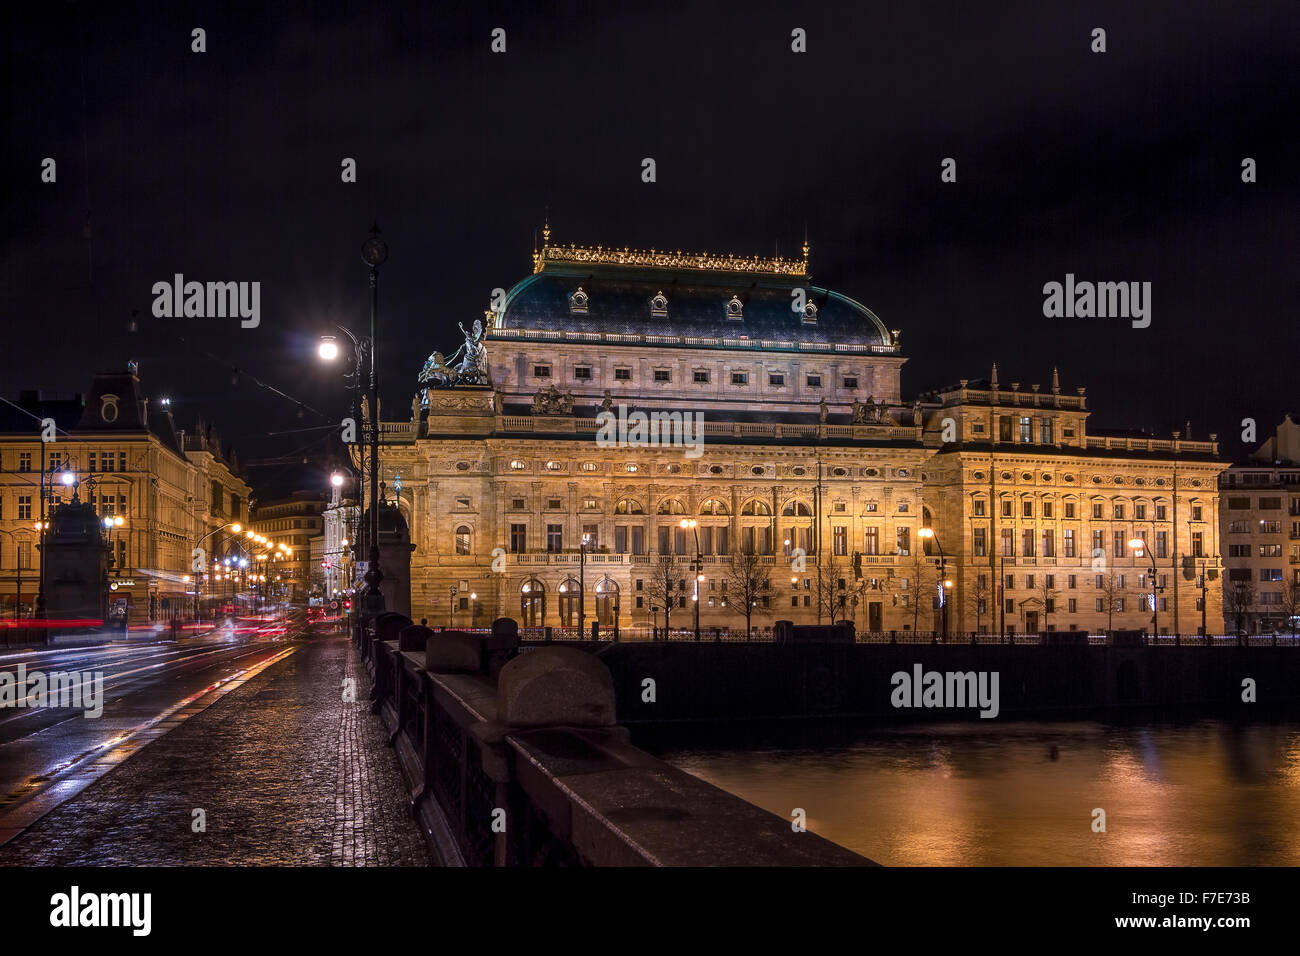 Il bellissimo Teatro nazionale sulle rive del fiume Moldava a Praga di notte. Foto Stock